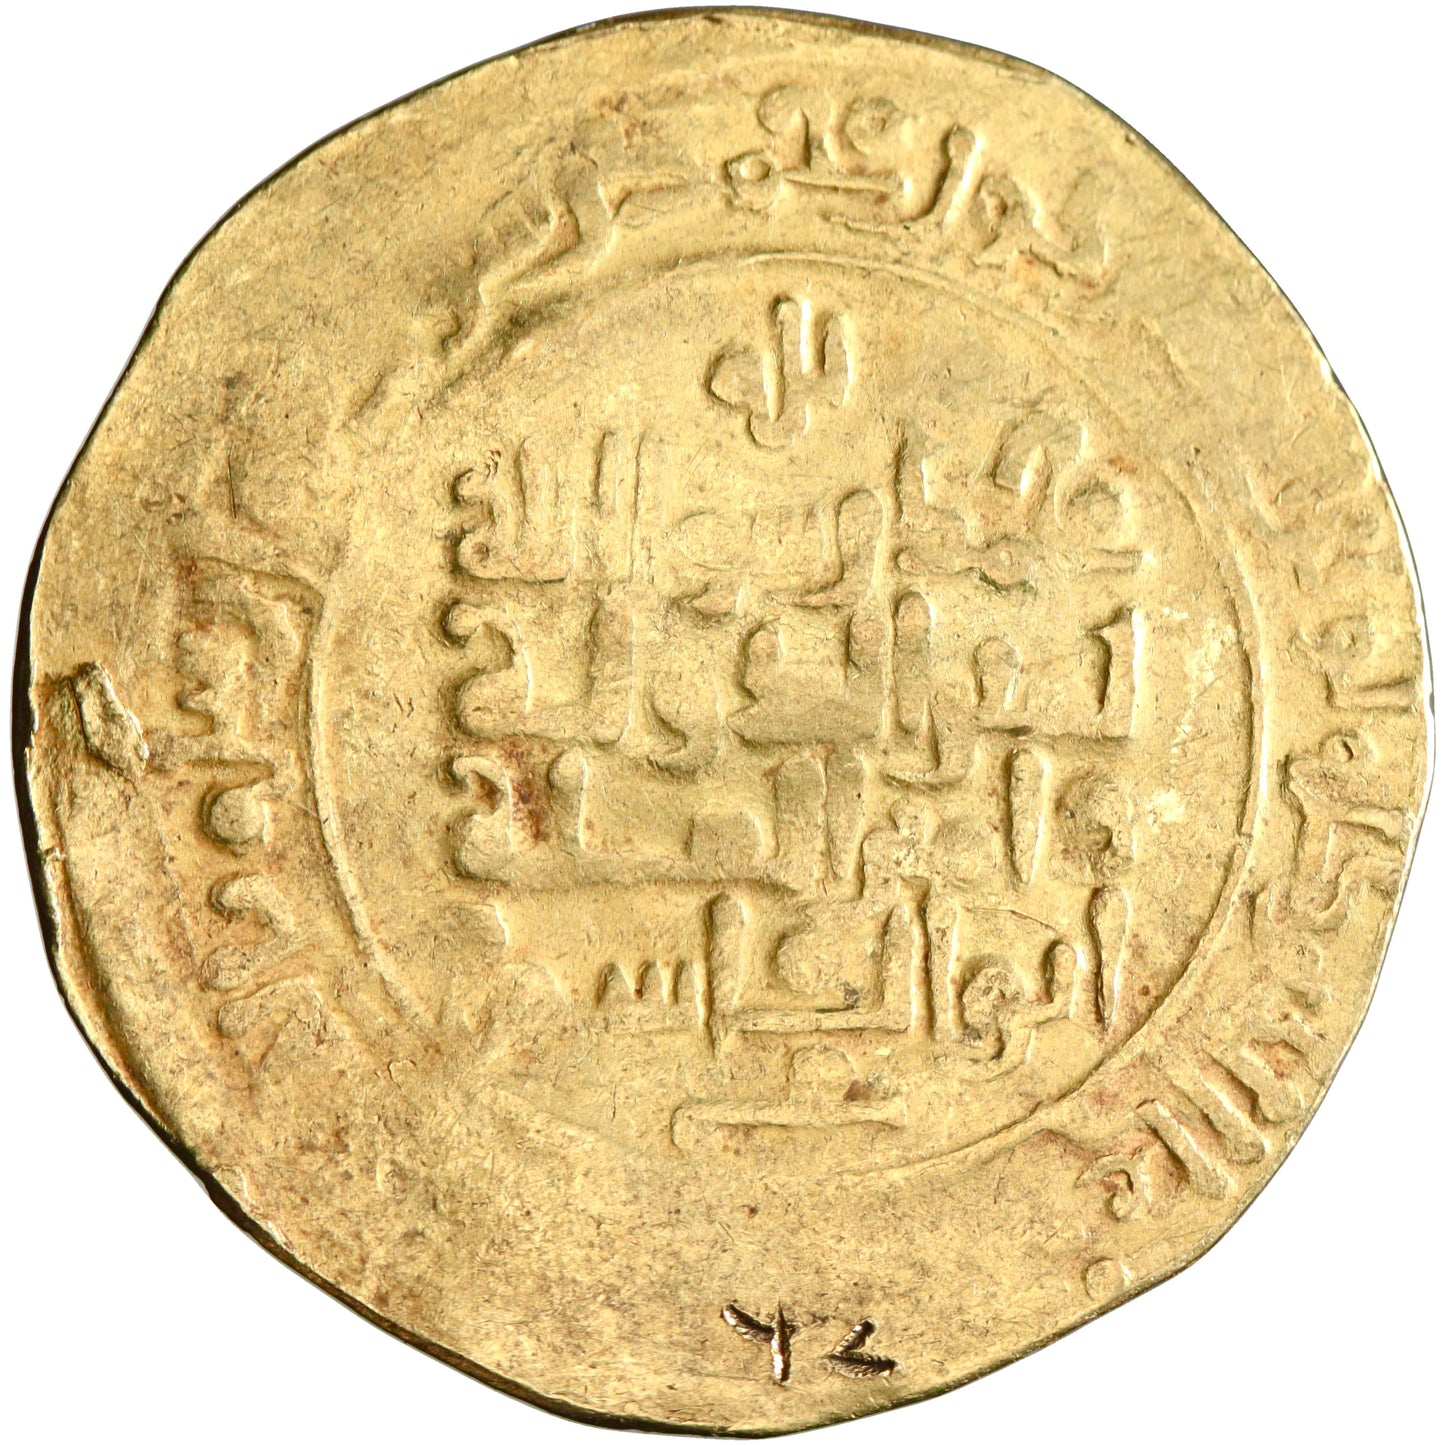 Ghaznavid, Mahmud ibn Sebuktegin, gold dinar, Herat mint, AH 395, citing al-Qadir